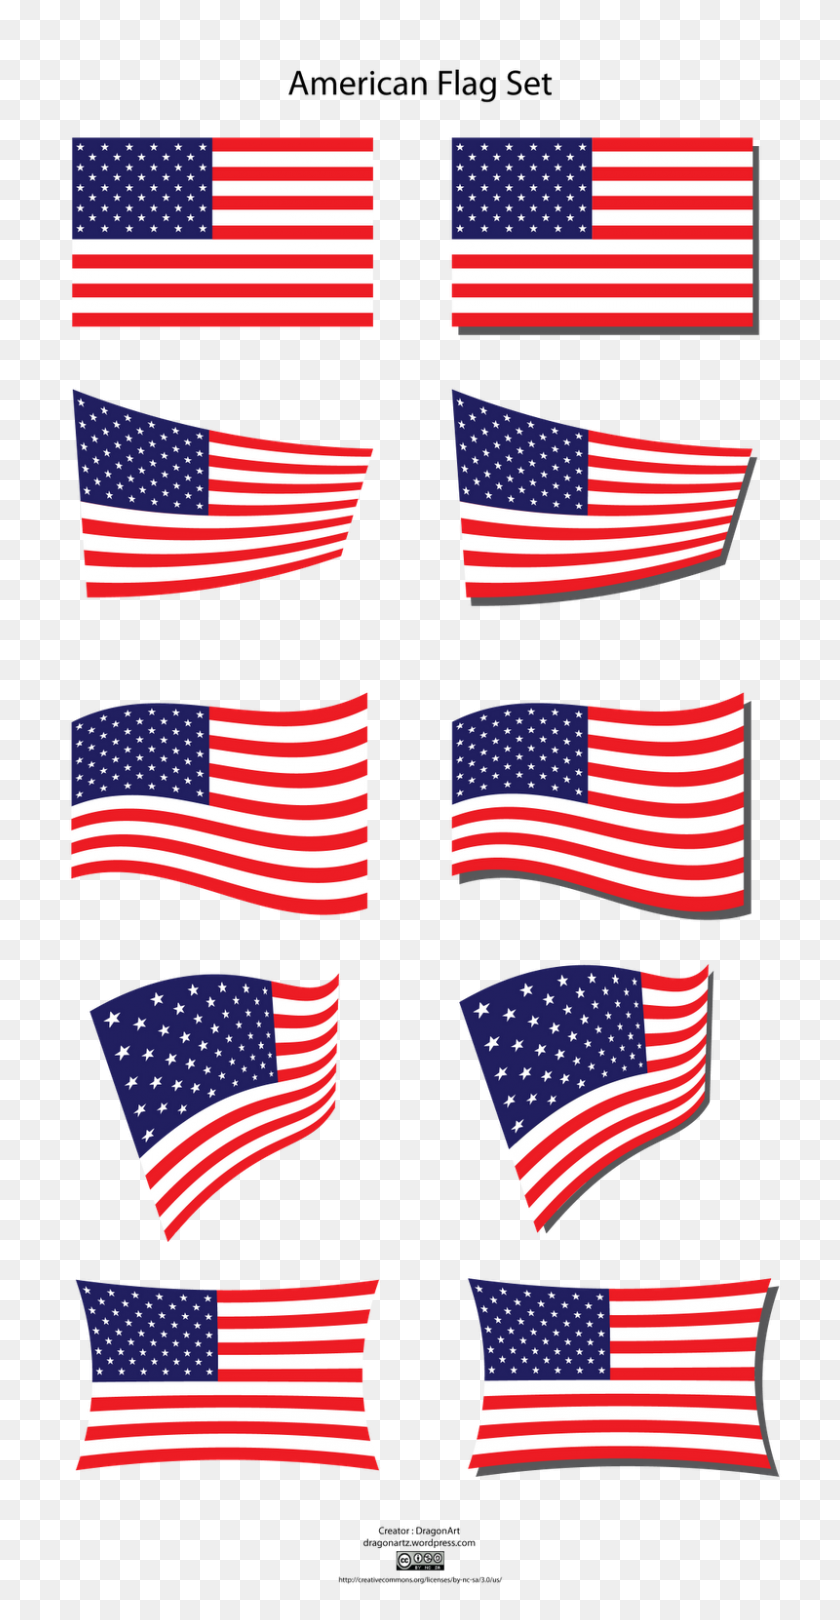 800x1600 Imágenes Prediseñadas De Alta Resolución De La Bandera Estadounidense - Imágenes Prediseñadas De La Bandera Estadounidense